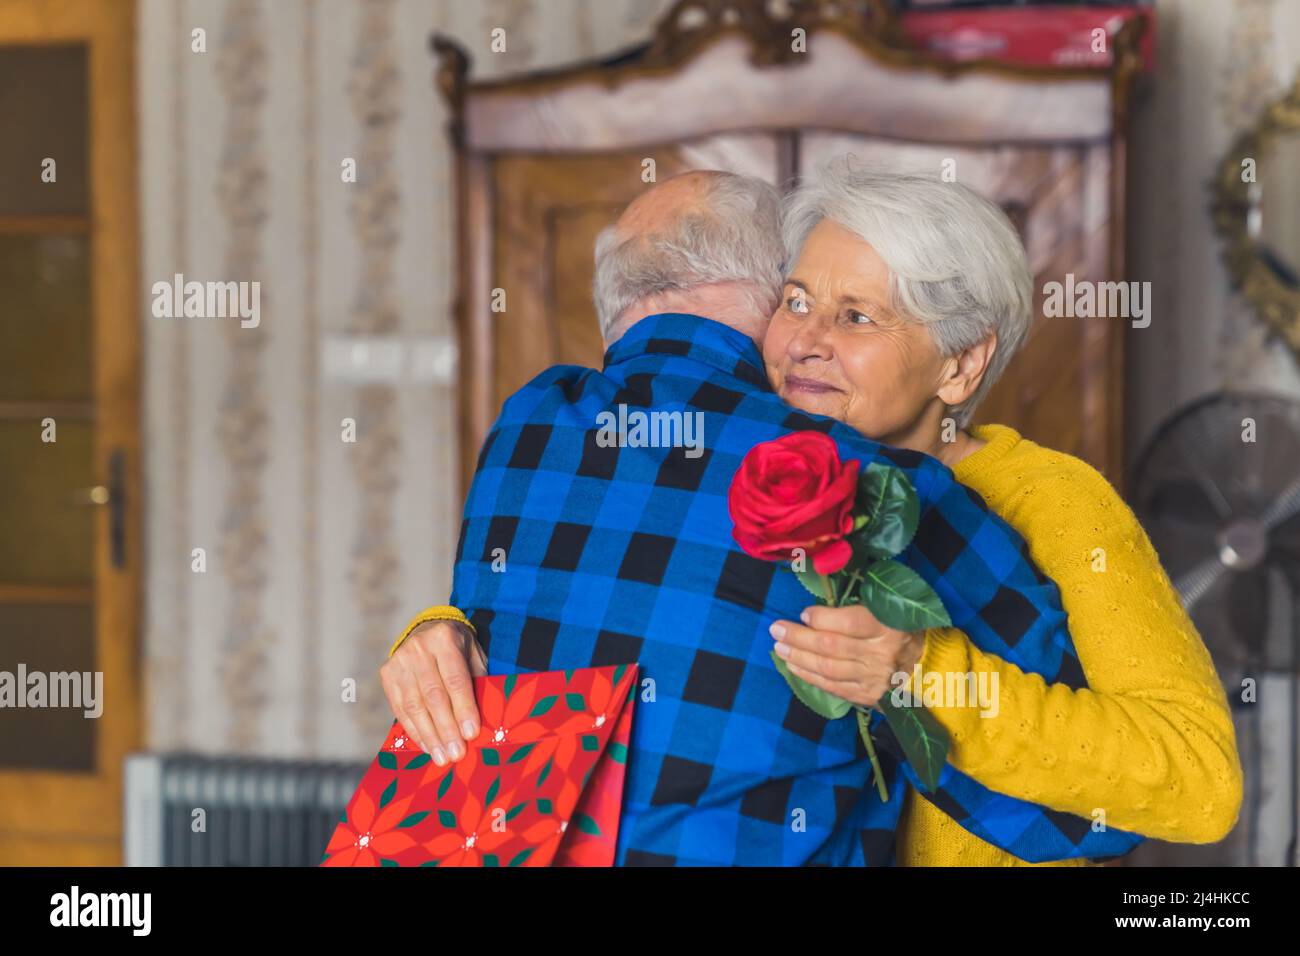 Concetto di celebrazione romantica. Anziana coppia caucasica festeggia il loro anniversario. Uomo in pensione che abbraccia la moglie dai capelli grigi che tiene una rosa rossa e una borsa regalo. Foto di alta qualità Foto Stock